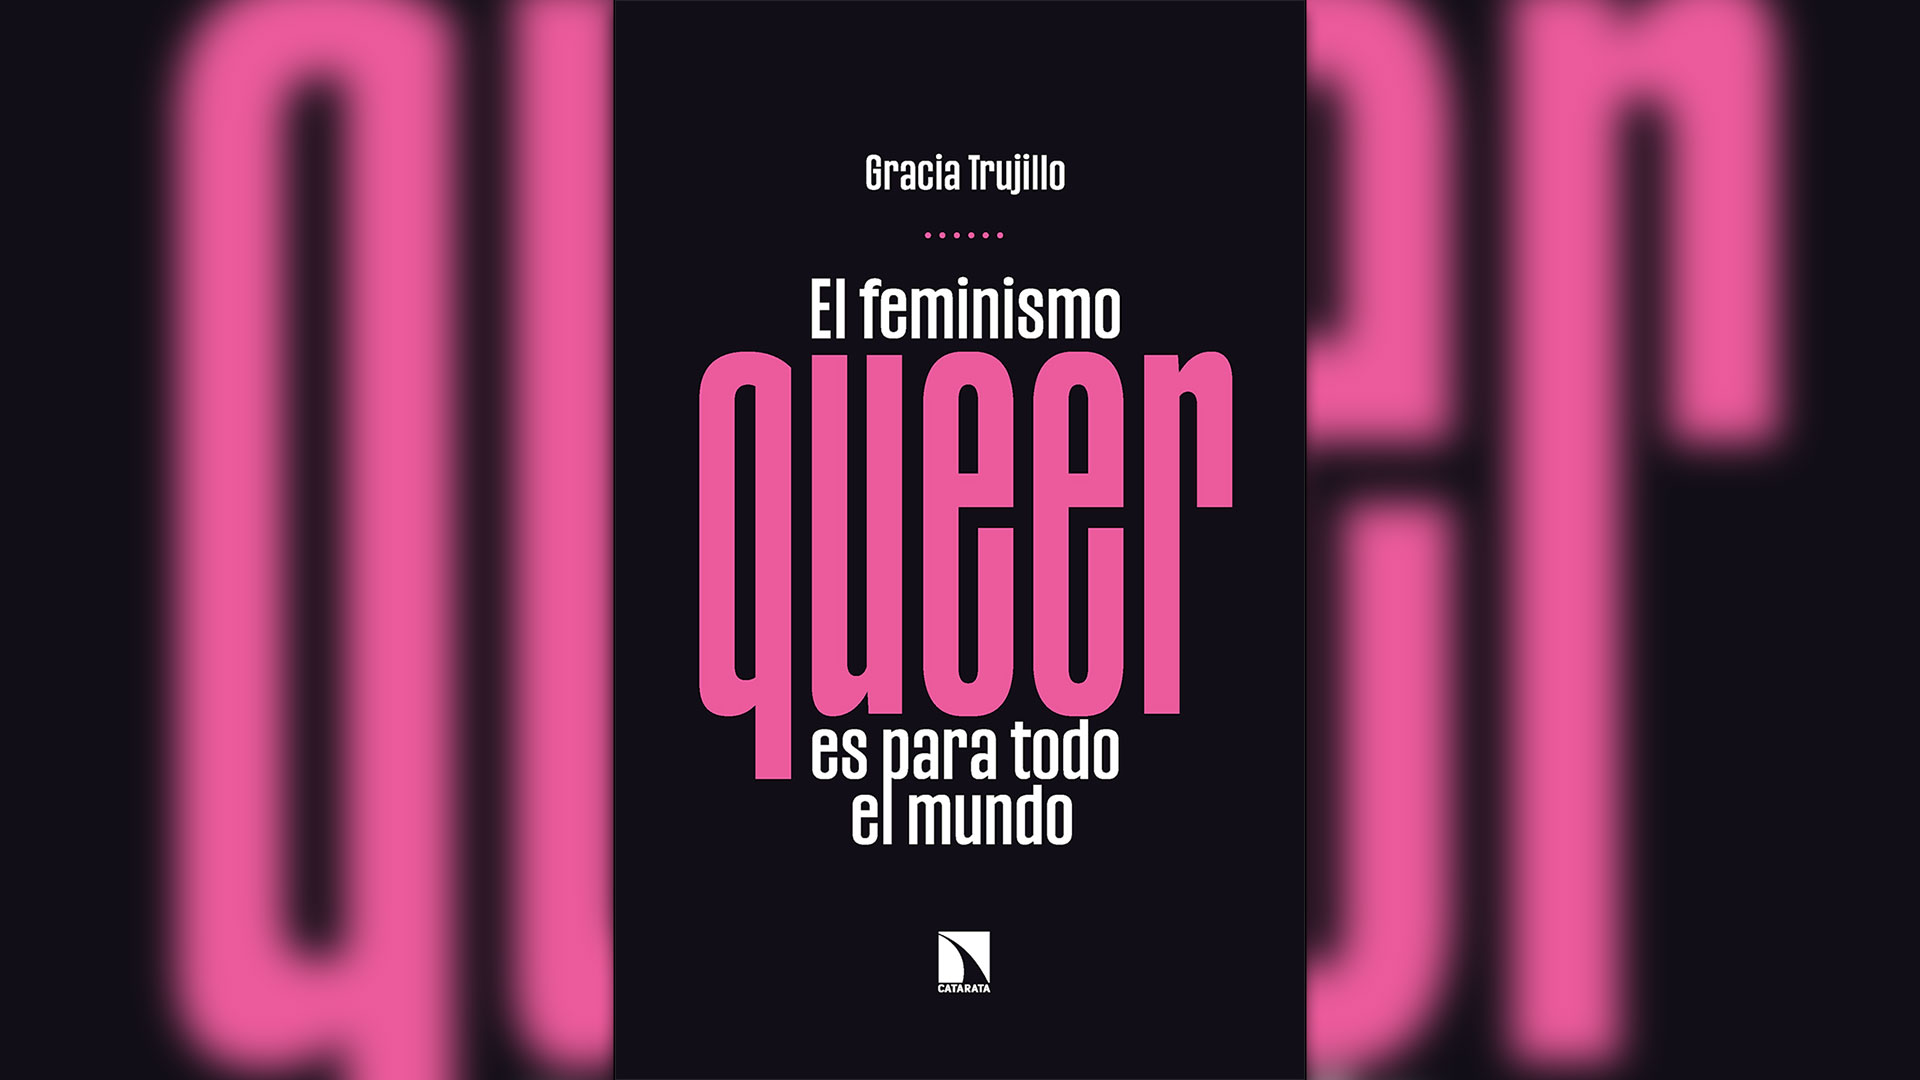 Portada de "Femenismo queer para todo el mundo", de Gracia Trujillo.